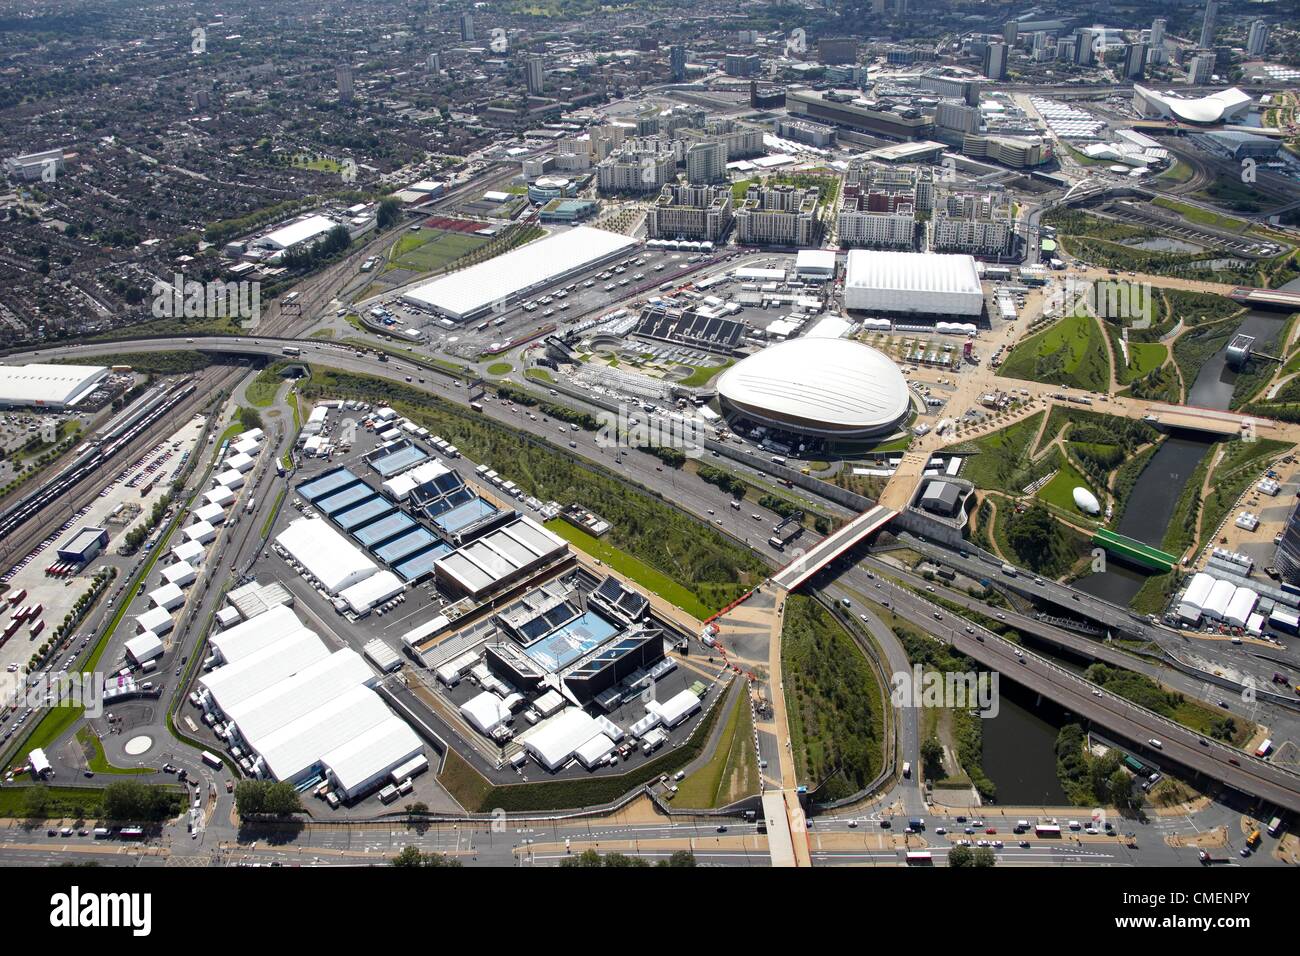 Photographie aérienne au sud-est du parc olympique, avec Eton Manor, le Vélodrome et l'arène de basket-ball. Le site olympique de Londres 2012, Stratford London E20 UK Banque D'Images